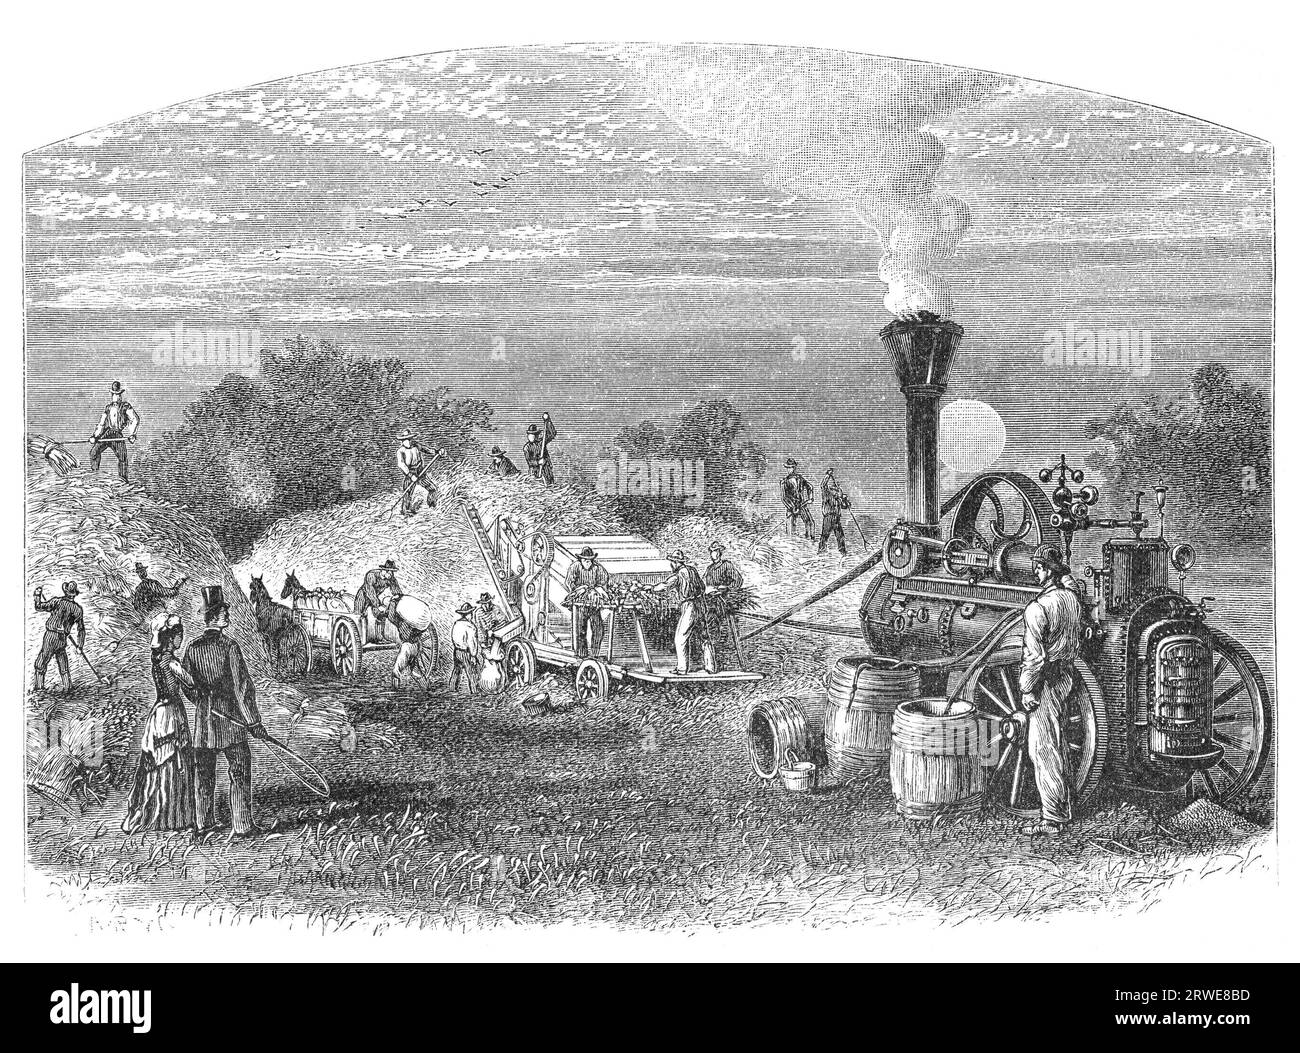 Landwirtschaft in Dakota, USA: Dreschen. Bildquelle: Harpers Monthly Magazine märz 1880 Stockfoto